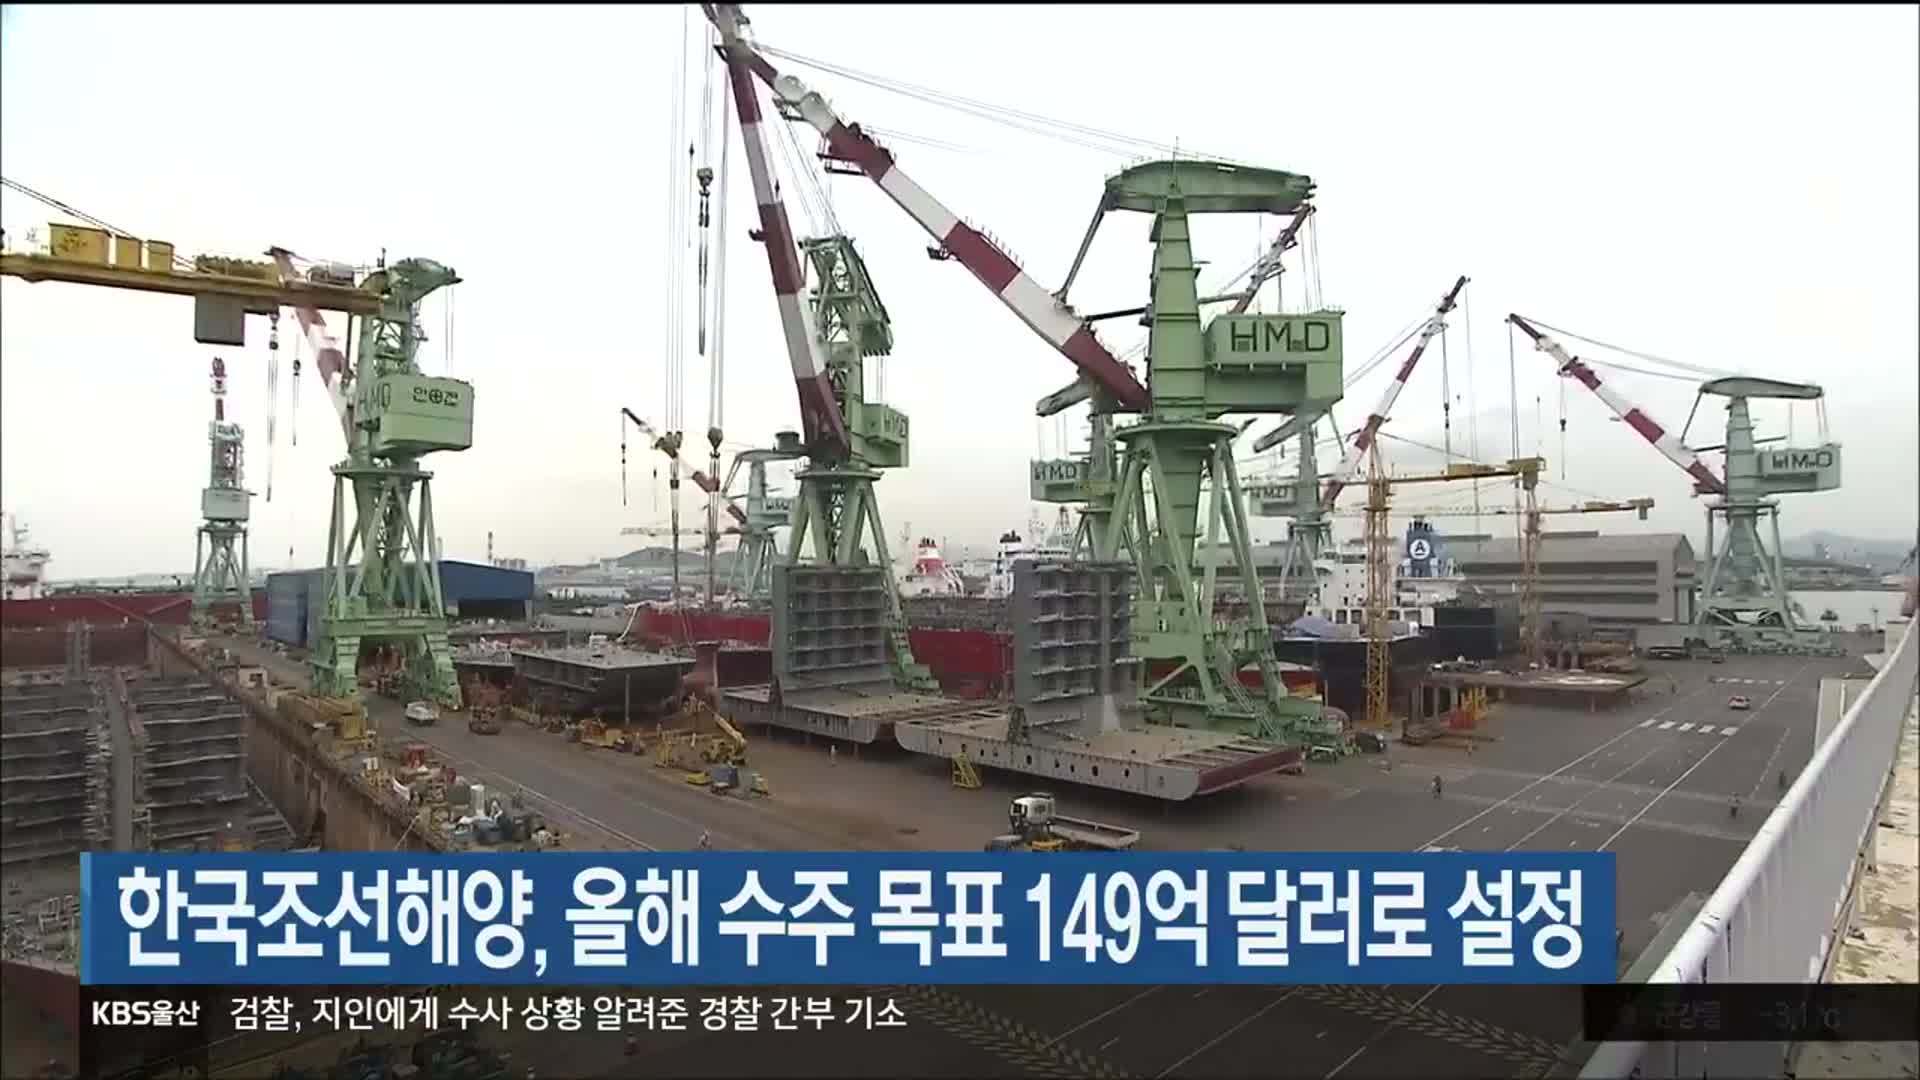 한국조선해양, 올해 수주 목표 149억 달러로 설정